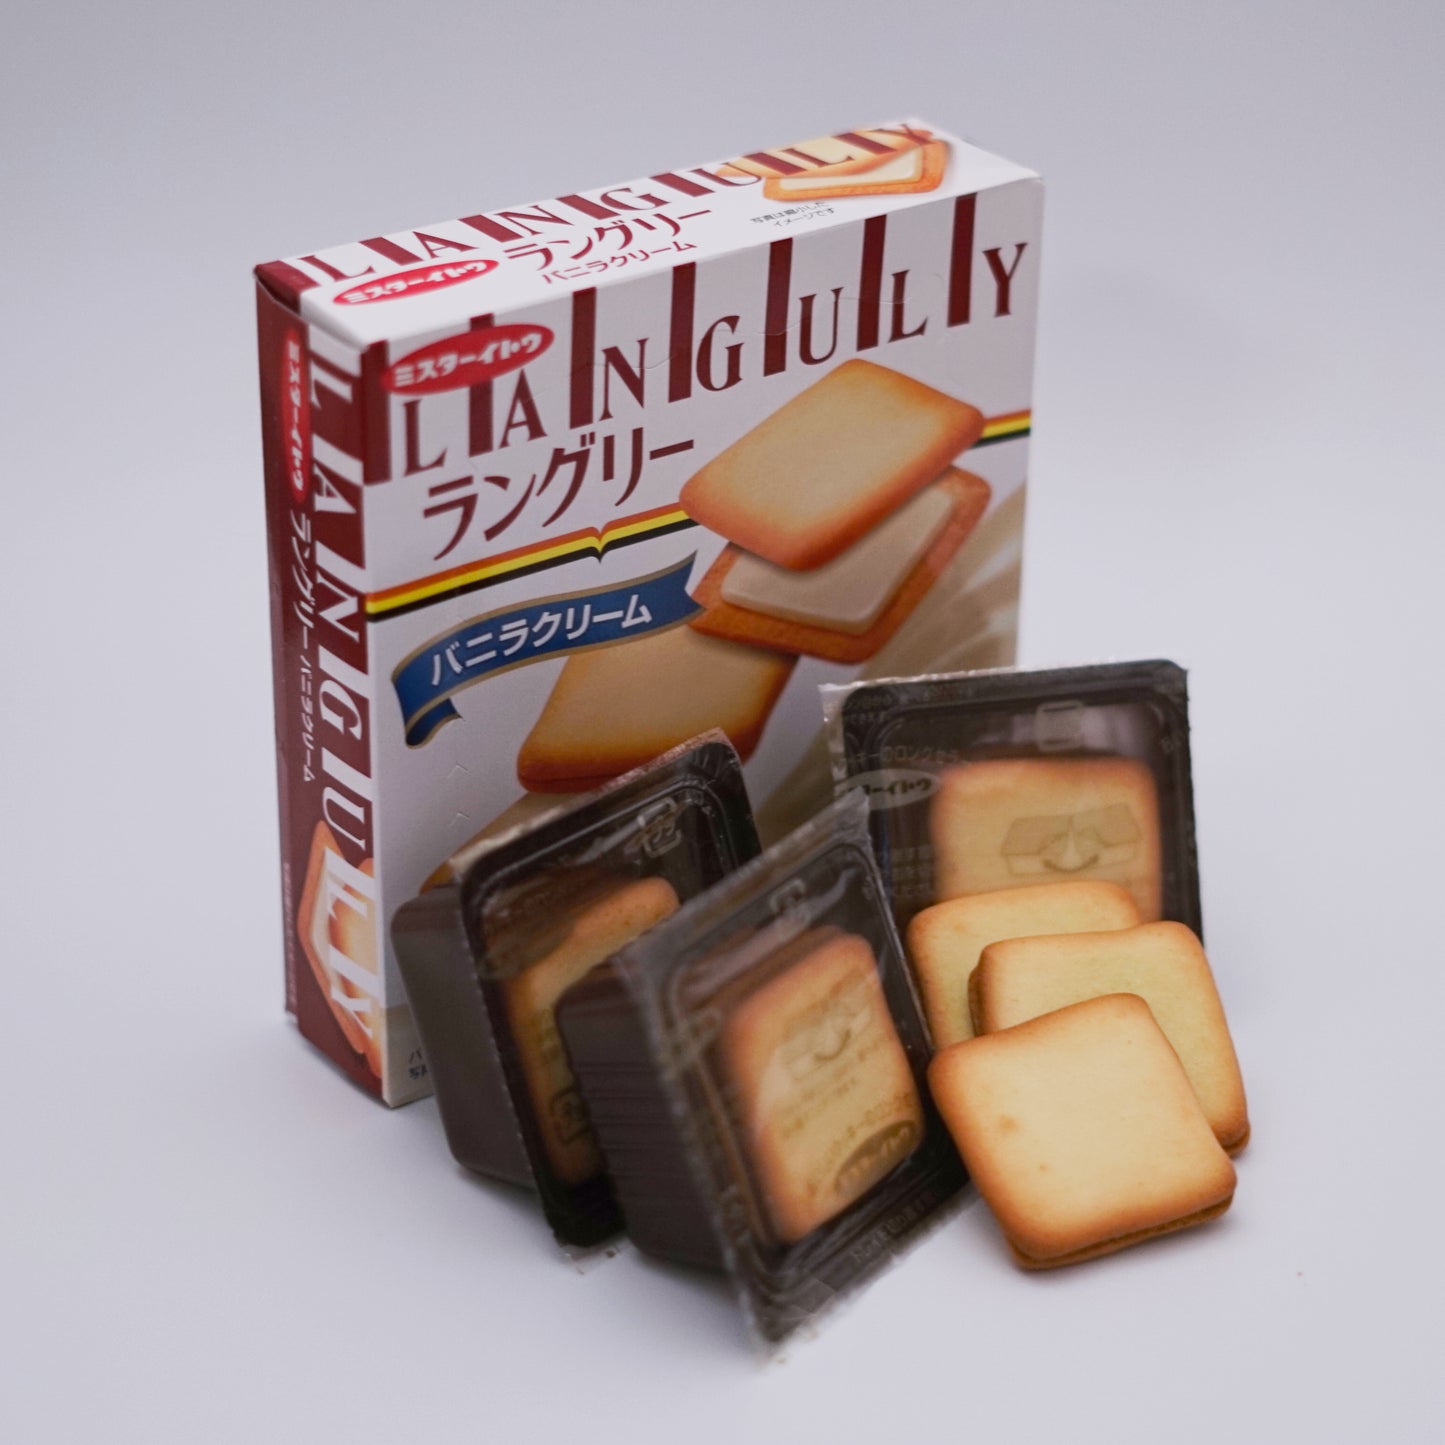 Expired - Ito Seika Languly Vanilla Cream Biscuits